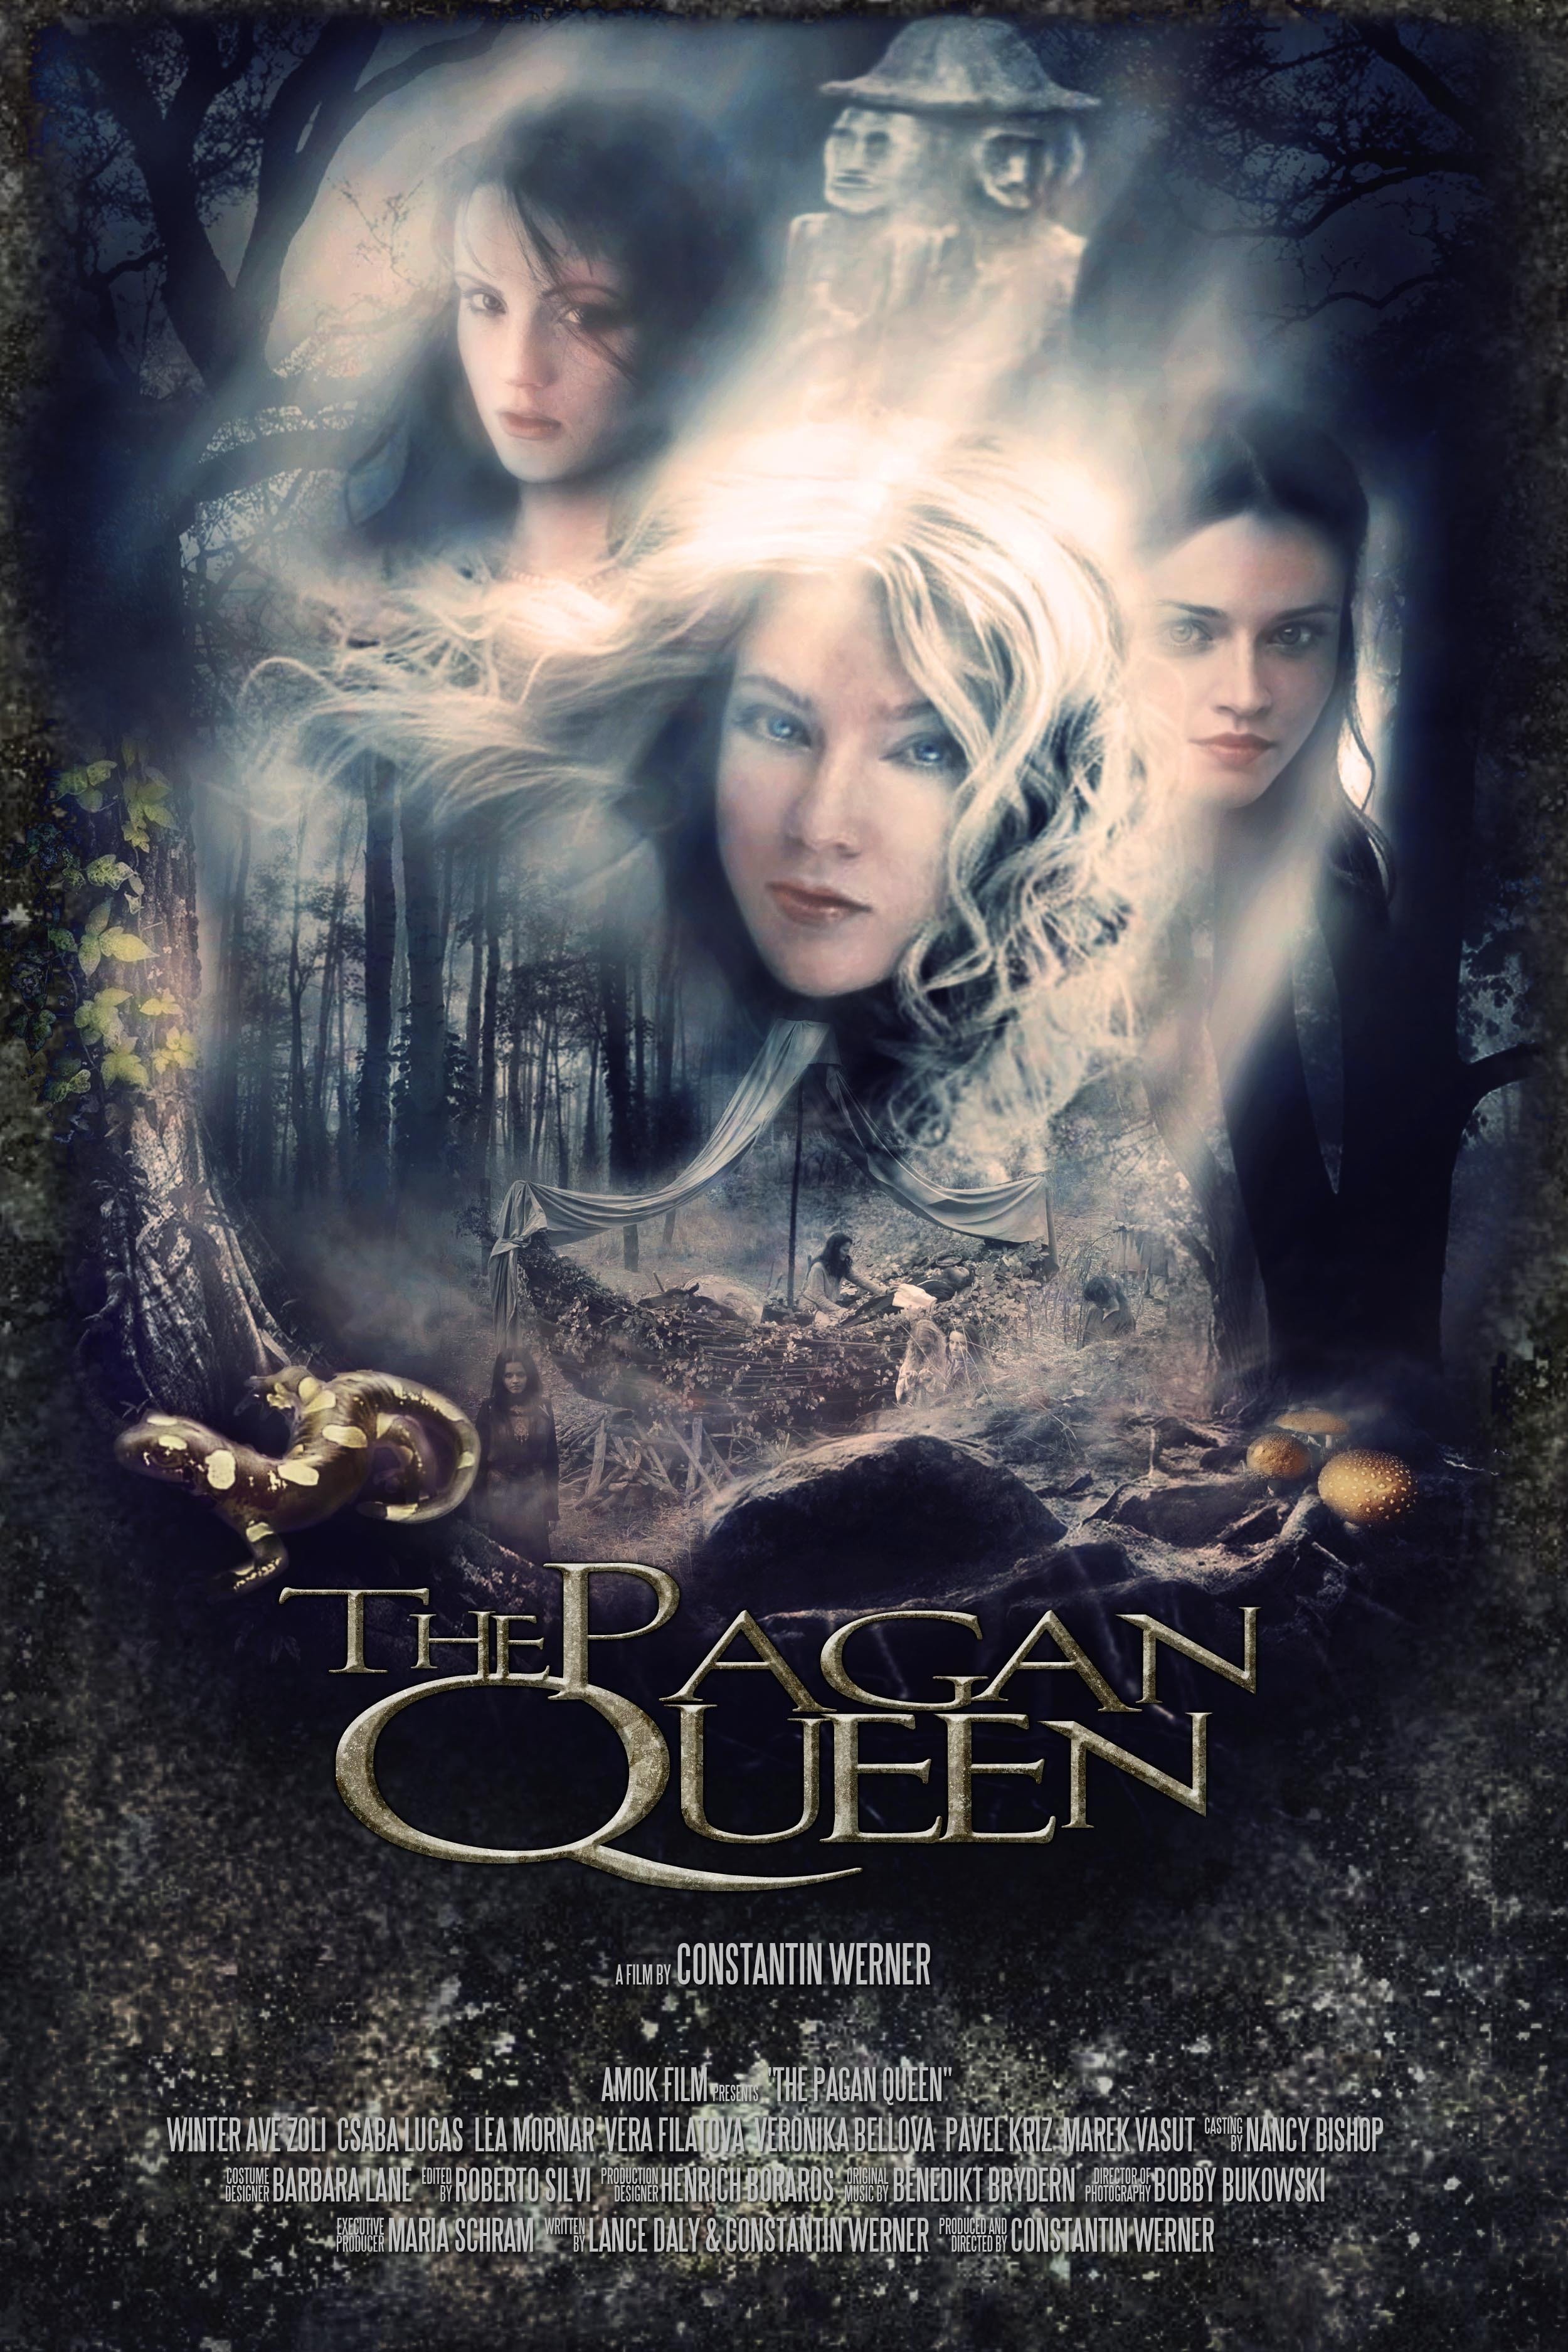 The Pagan Queen (2009) Screenshot 1